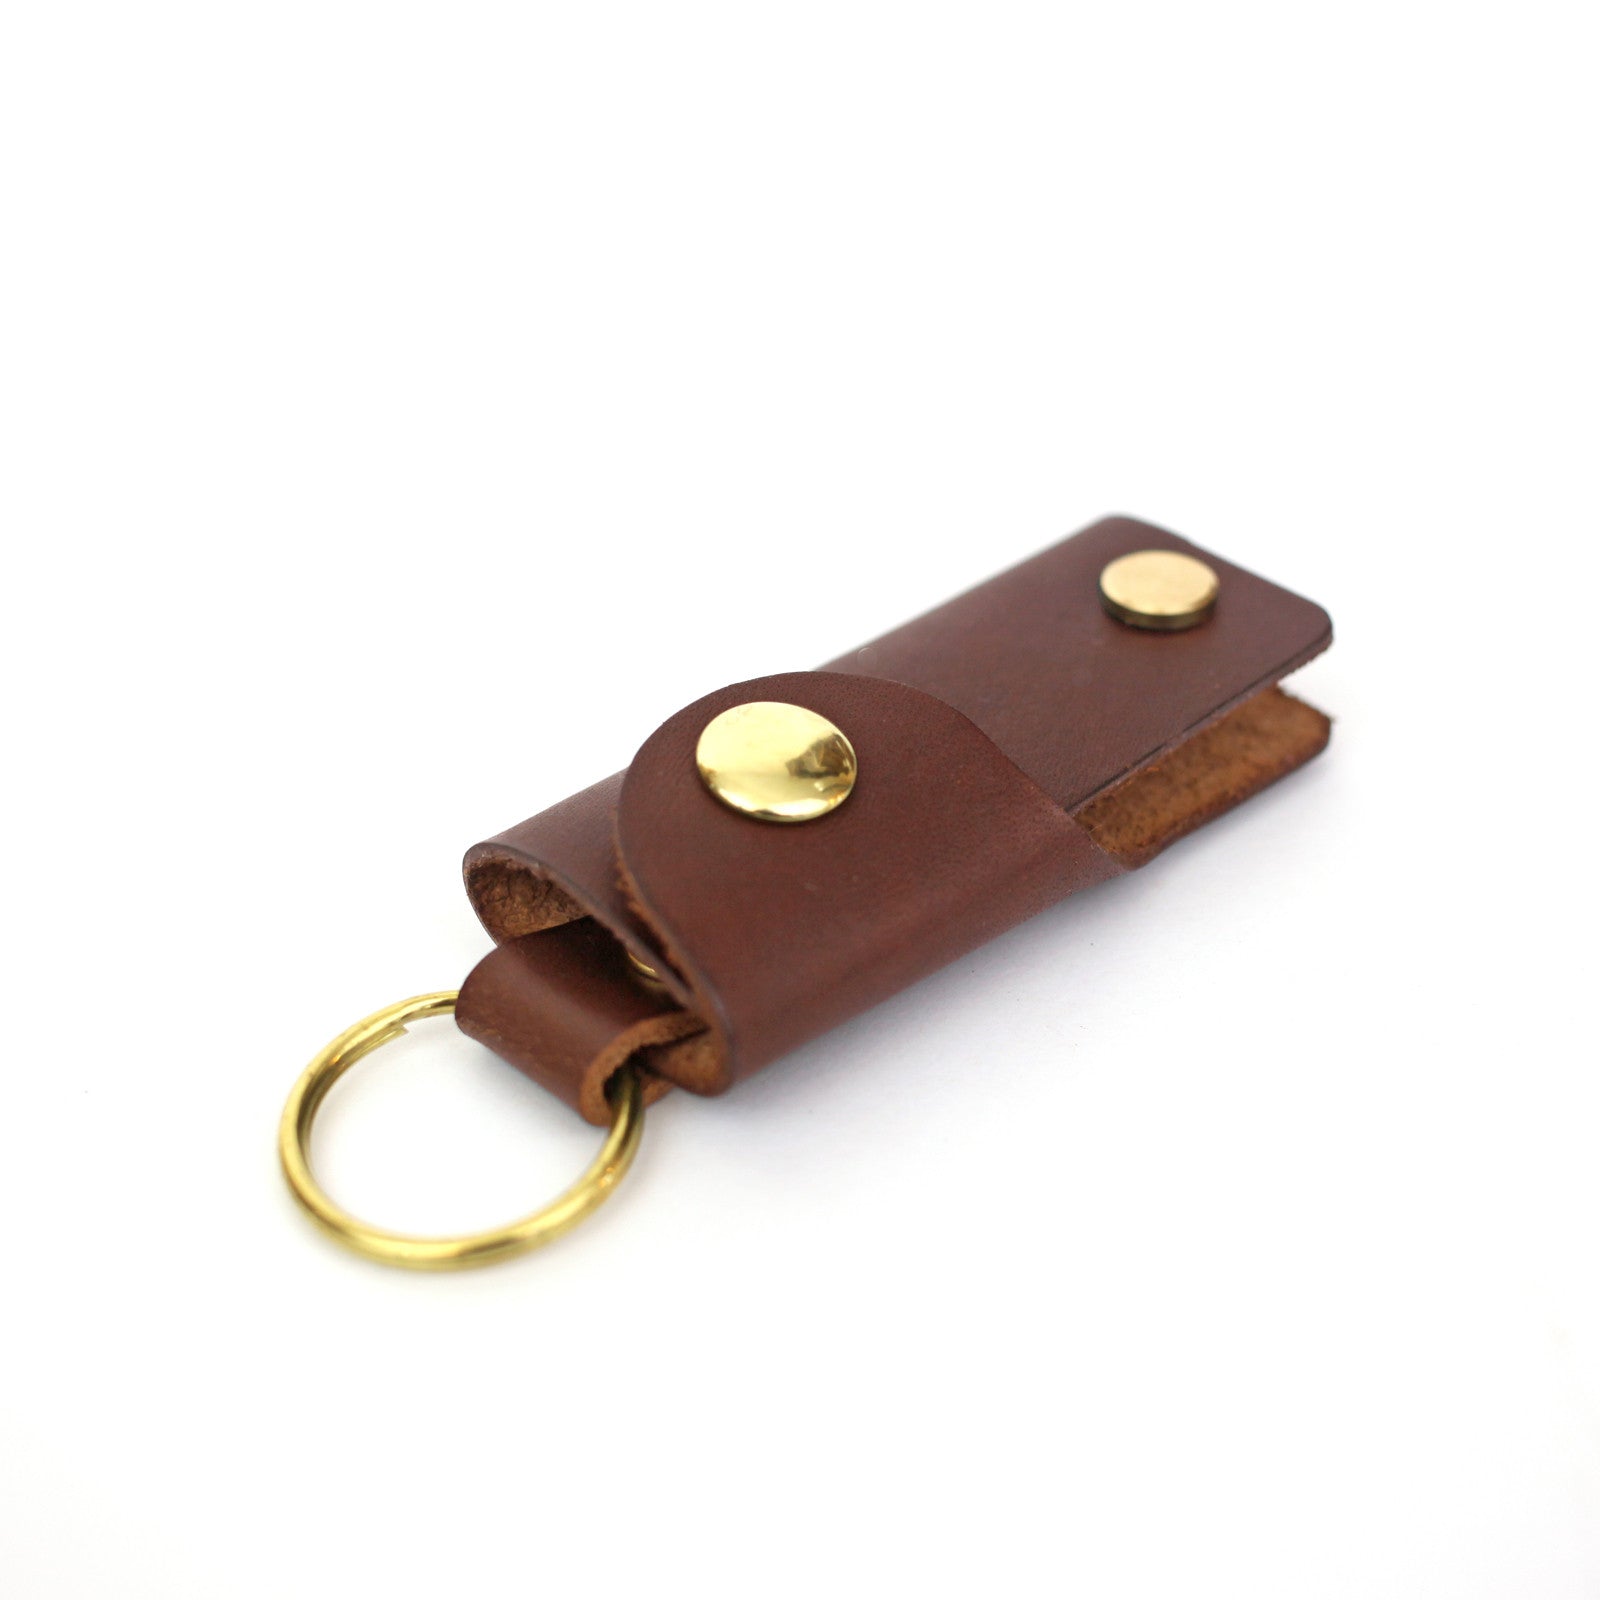 Leather Key Case